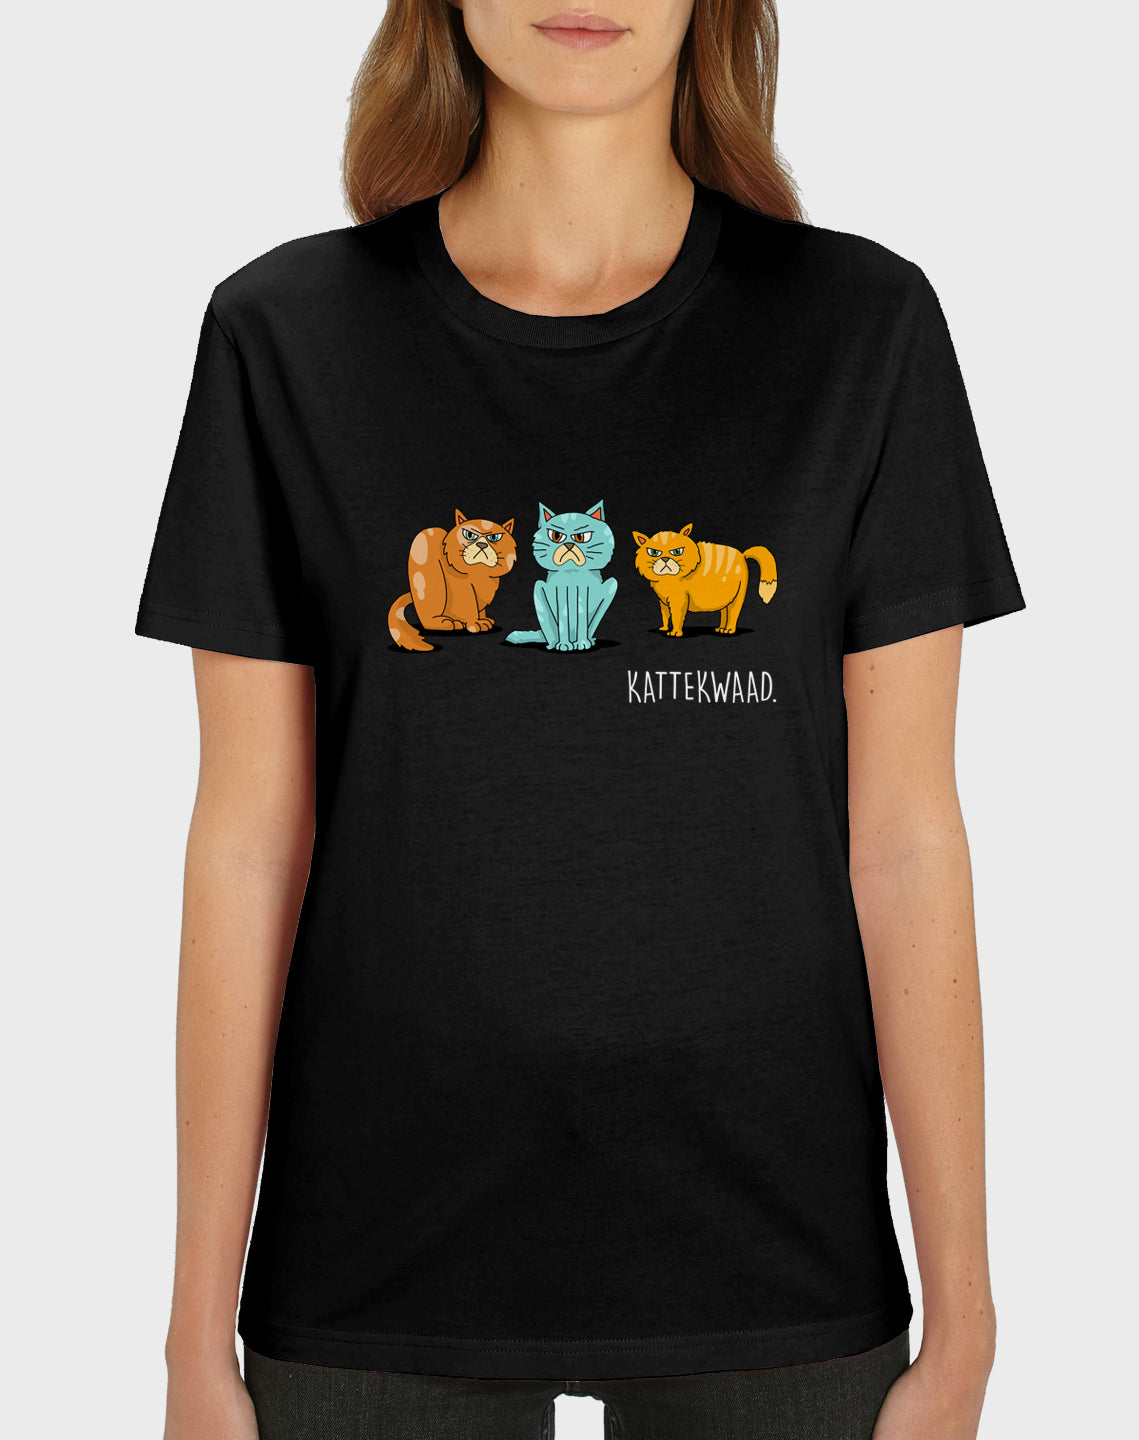 Idees Vol Vrees® Kattekwaad Women's T-shirt